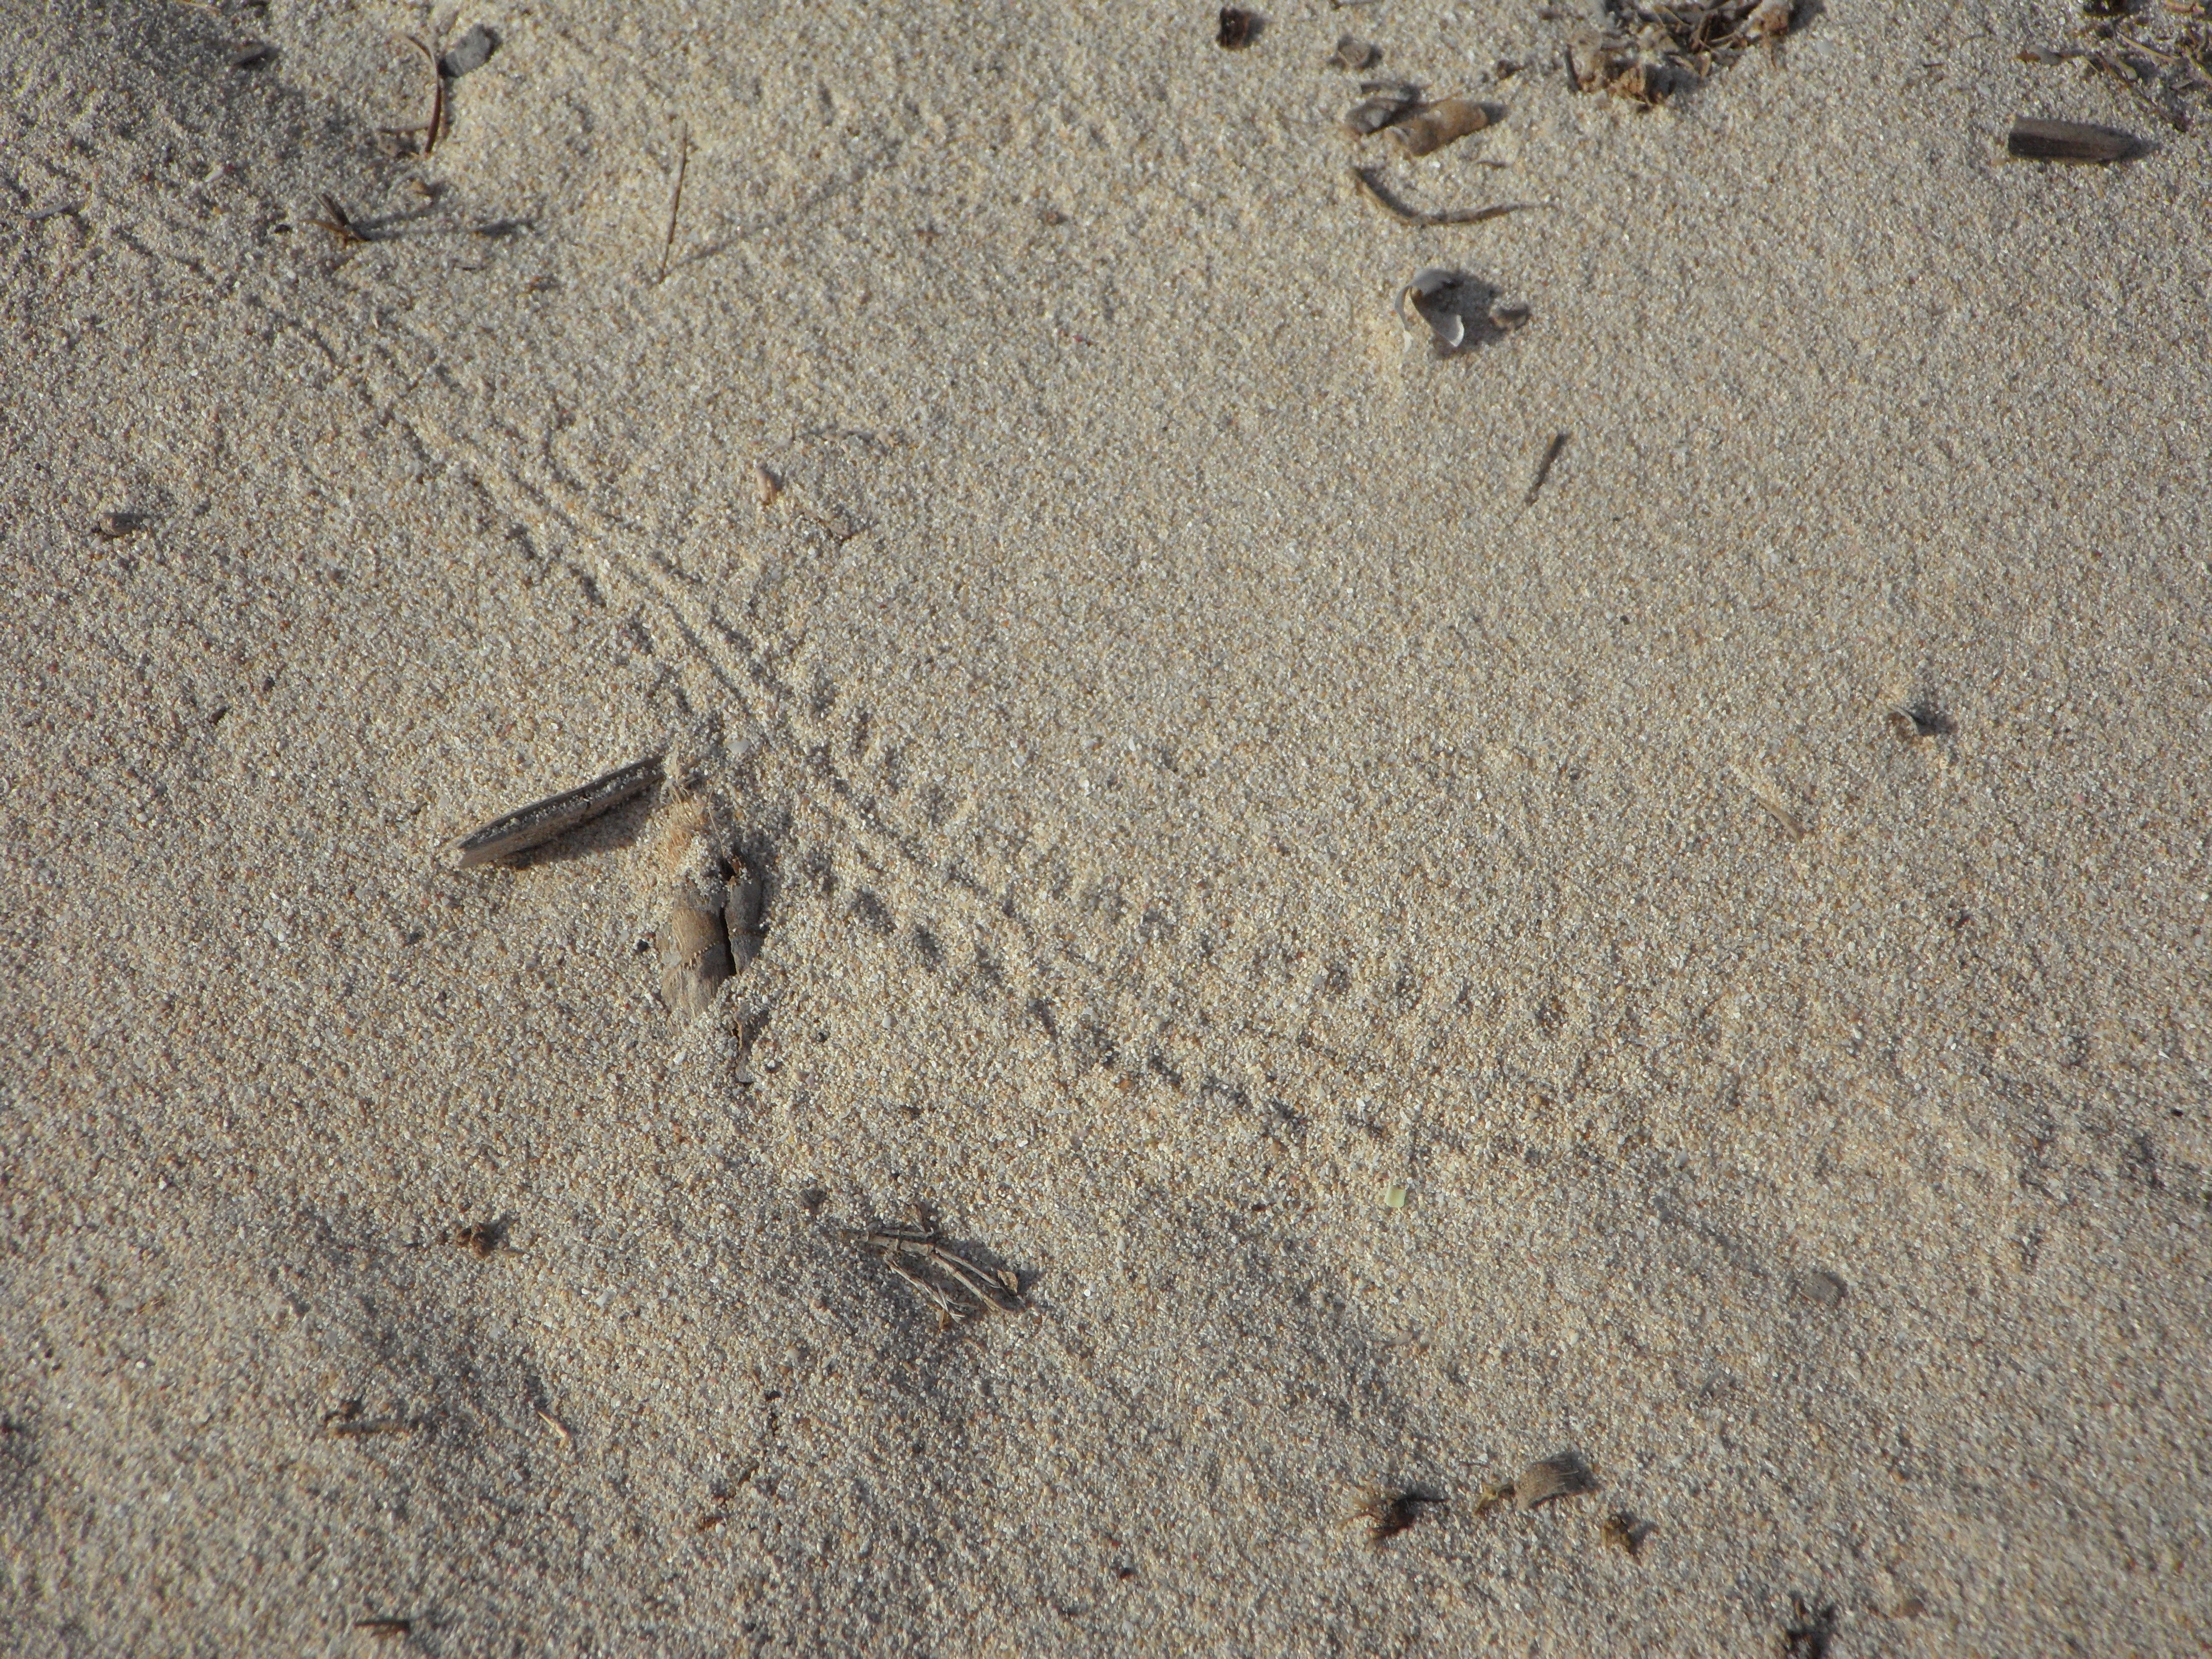 След змеи на песке